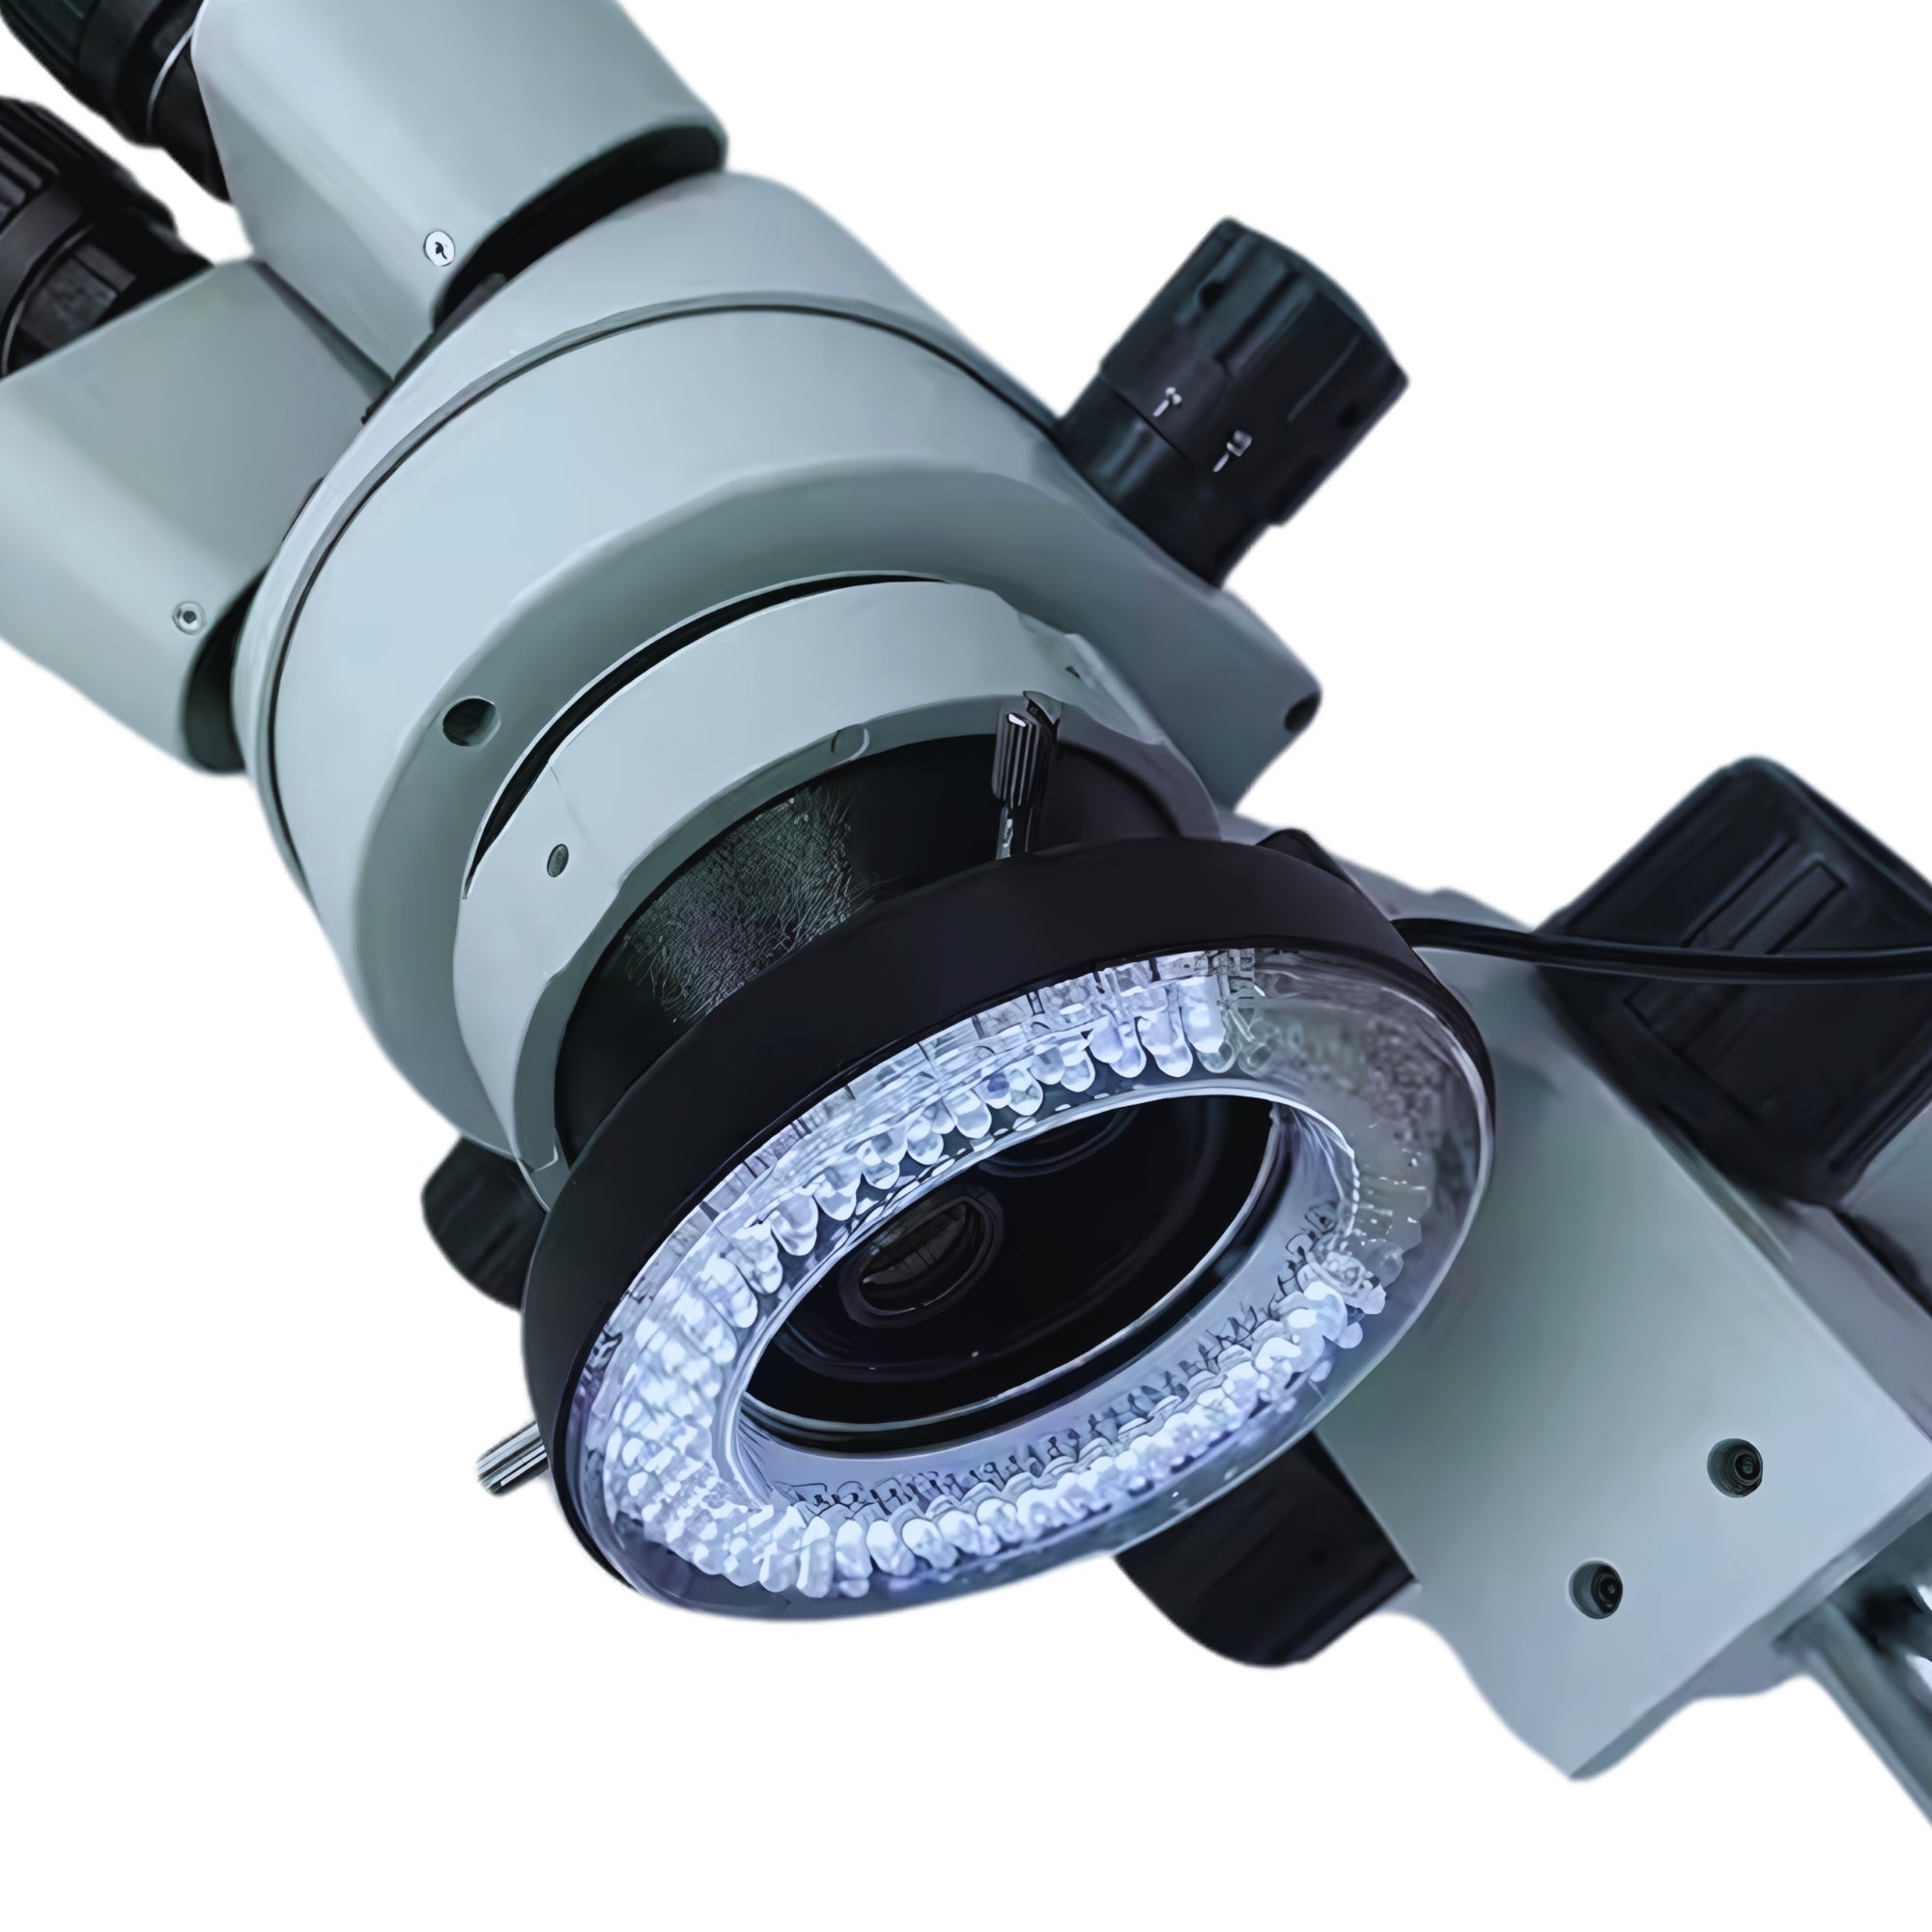 Πρόσθετος φωτισμός μικροσκοπίου: φως ημέρας και υπεριώδες φως